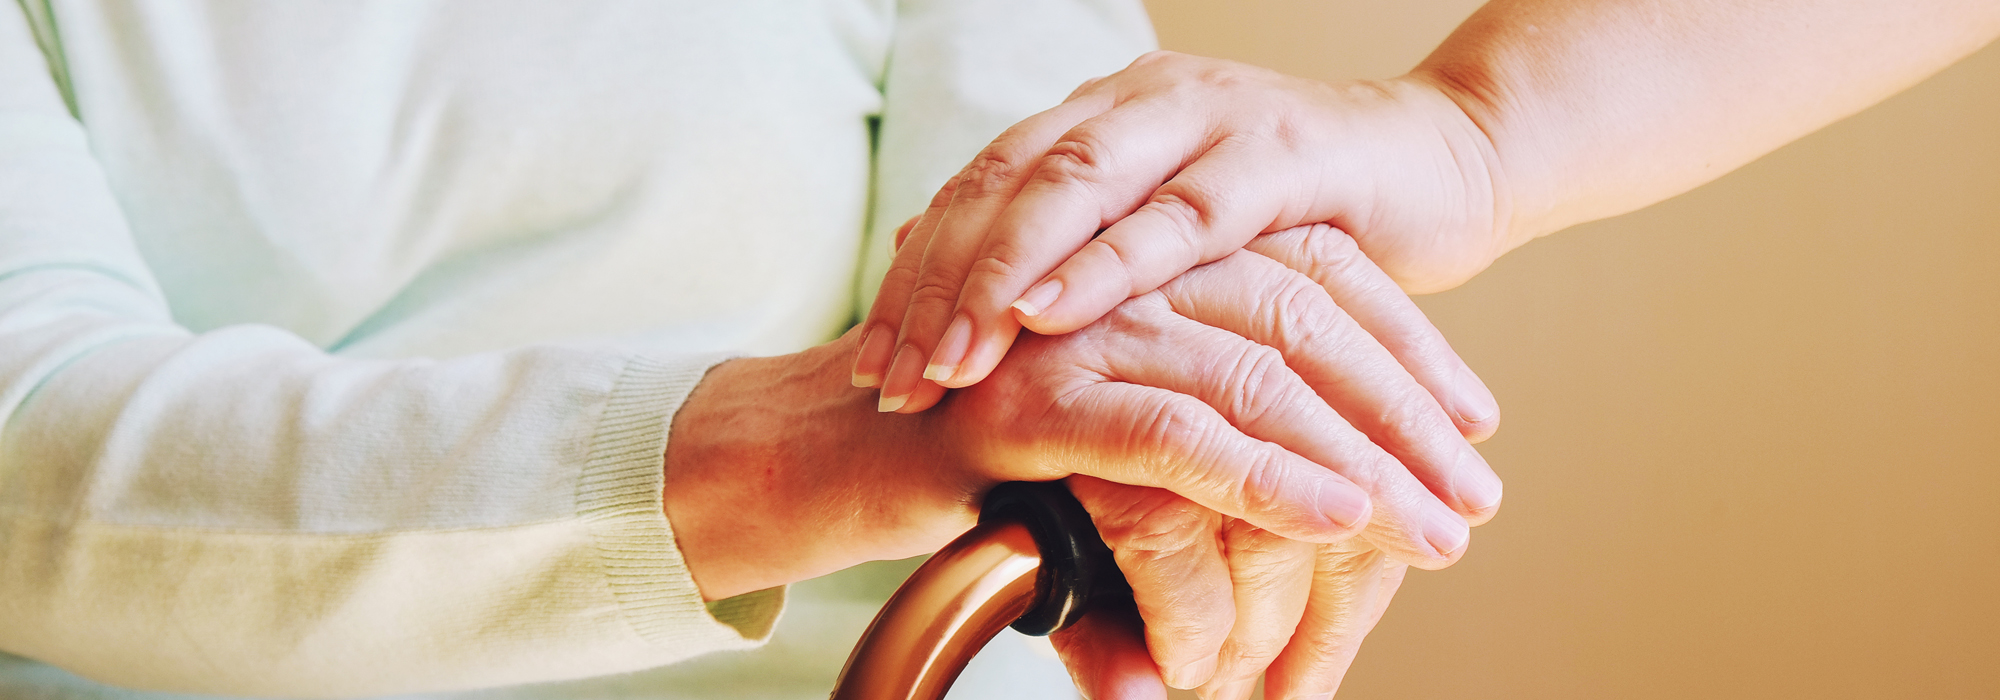 Ottawa doit jouer un rôle stratégique en matière de soins aux personnes âgées